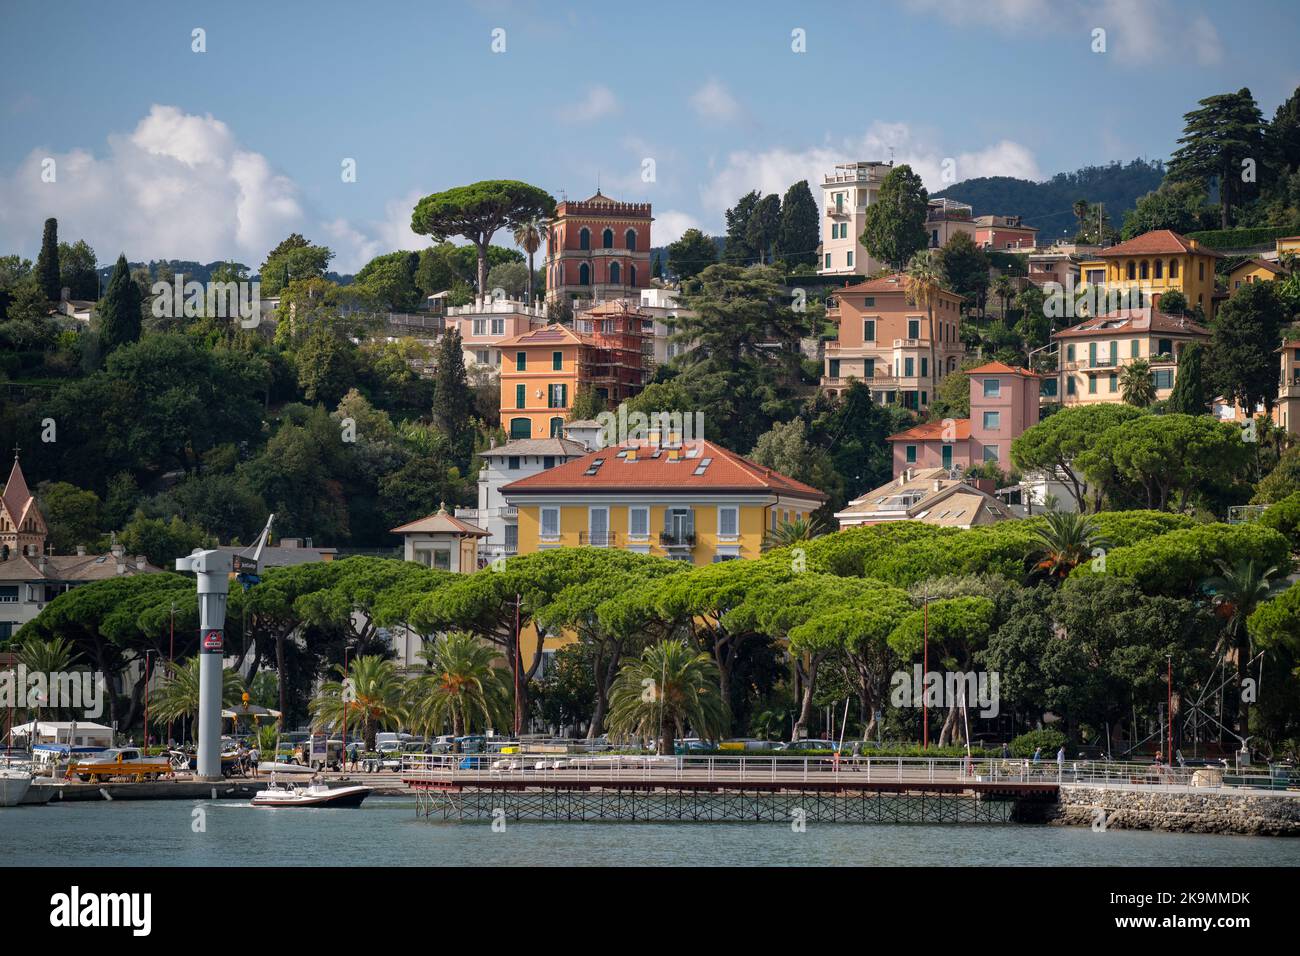 Santa Margherita Ligure es una localidad y comune italiana de la ciudad metropolitana de Génova, región de Liguria, con 35 habitantes 22 Foto de stock